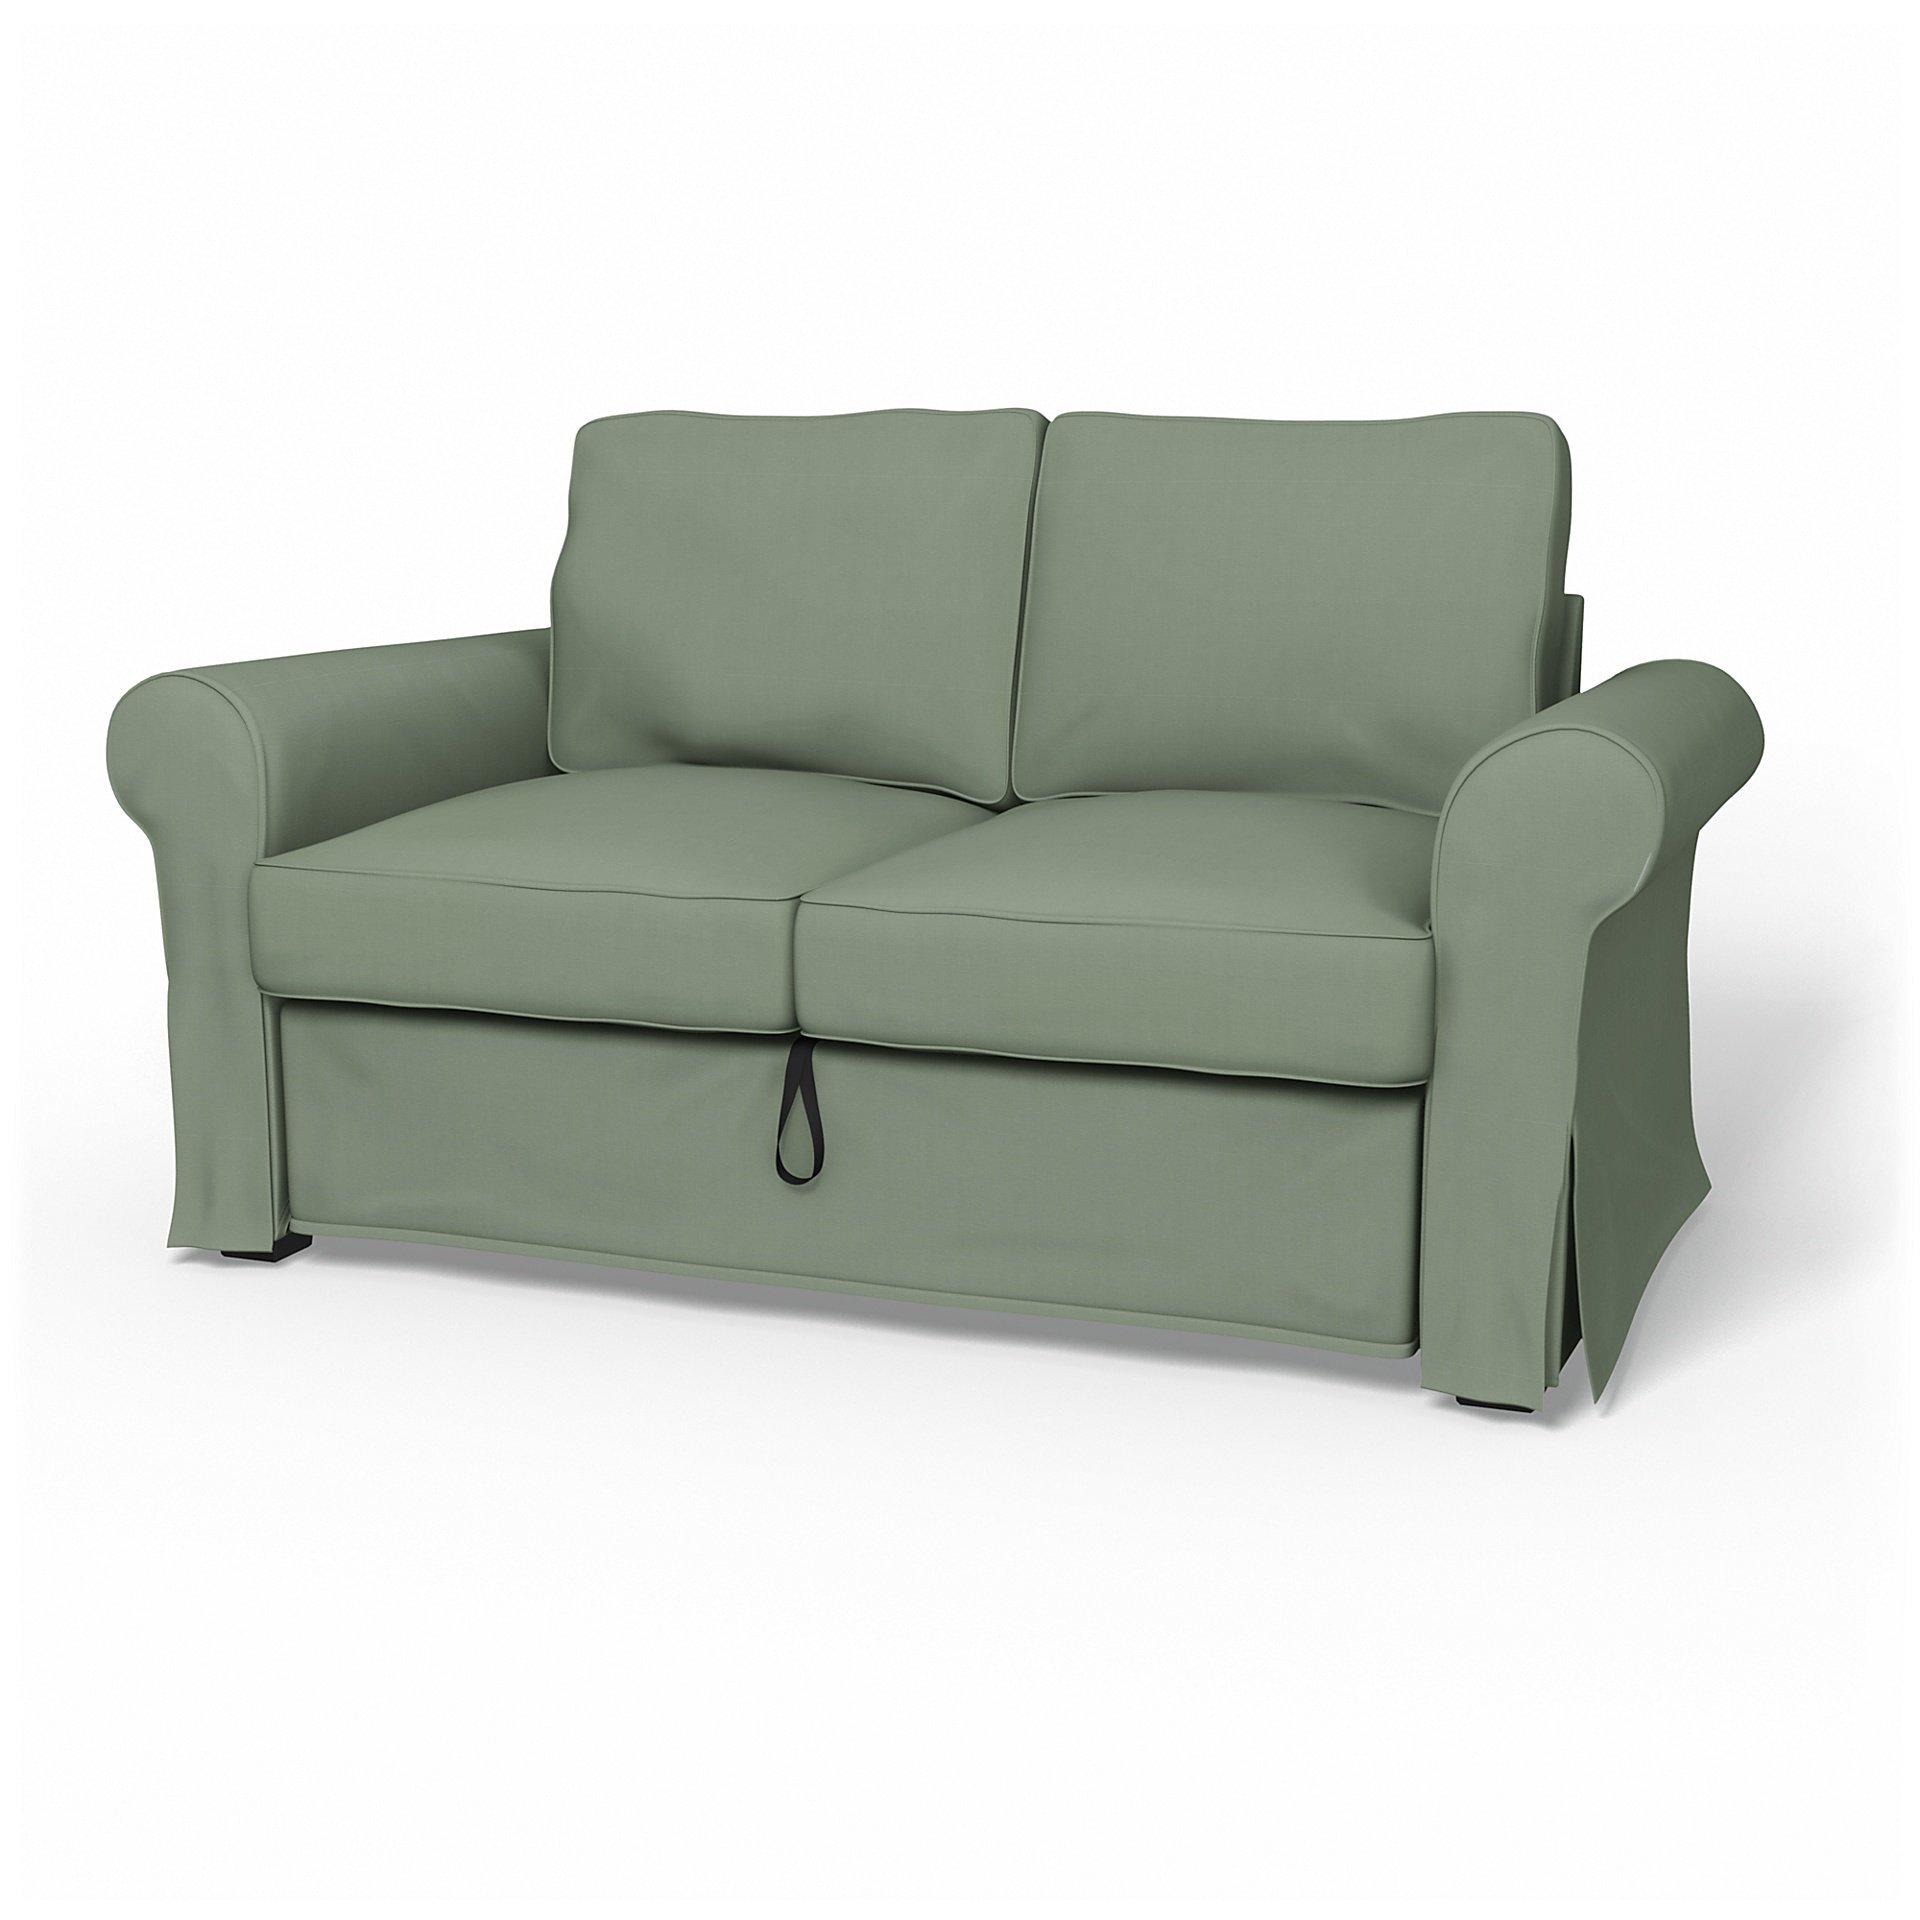 IKEA - Backabro 2 Seater Sofa Bed Cover, Seagrass, Cotton - Bemz